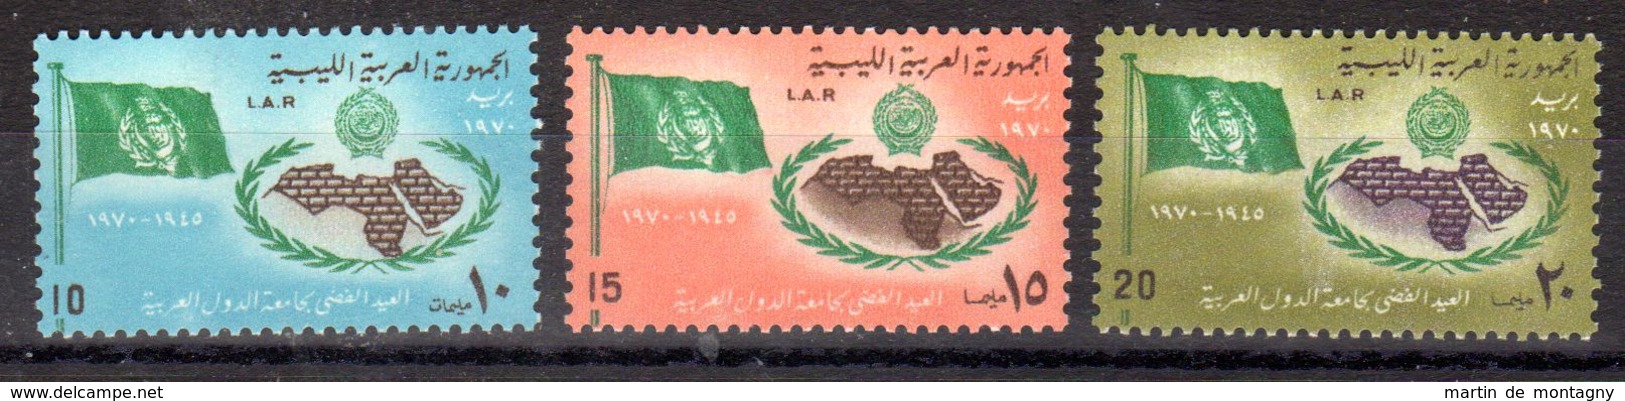 22.3.1970;; 25e Anniversaire De La Ligue Arabe; YT 356 - 358 Neuf **, Lot 50605 - Libye